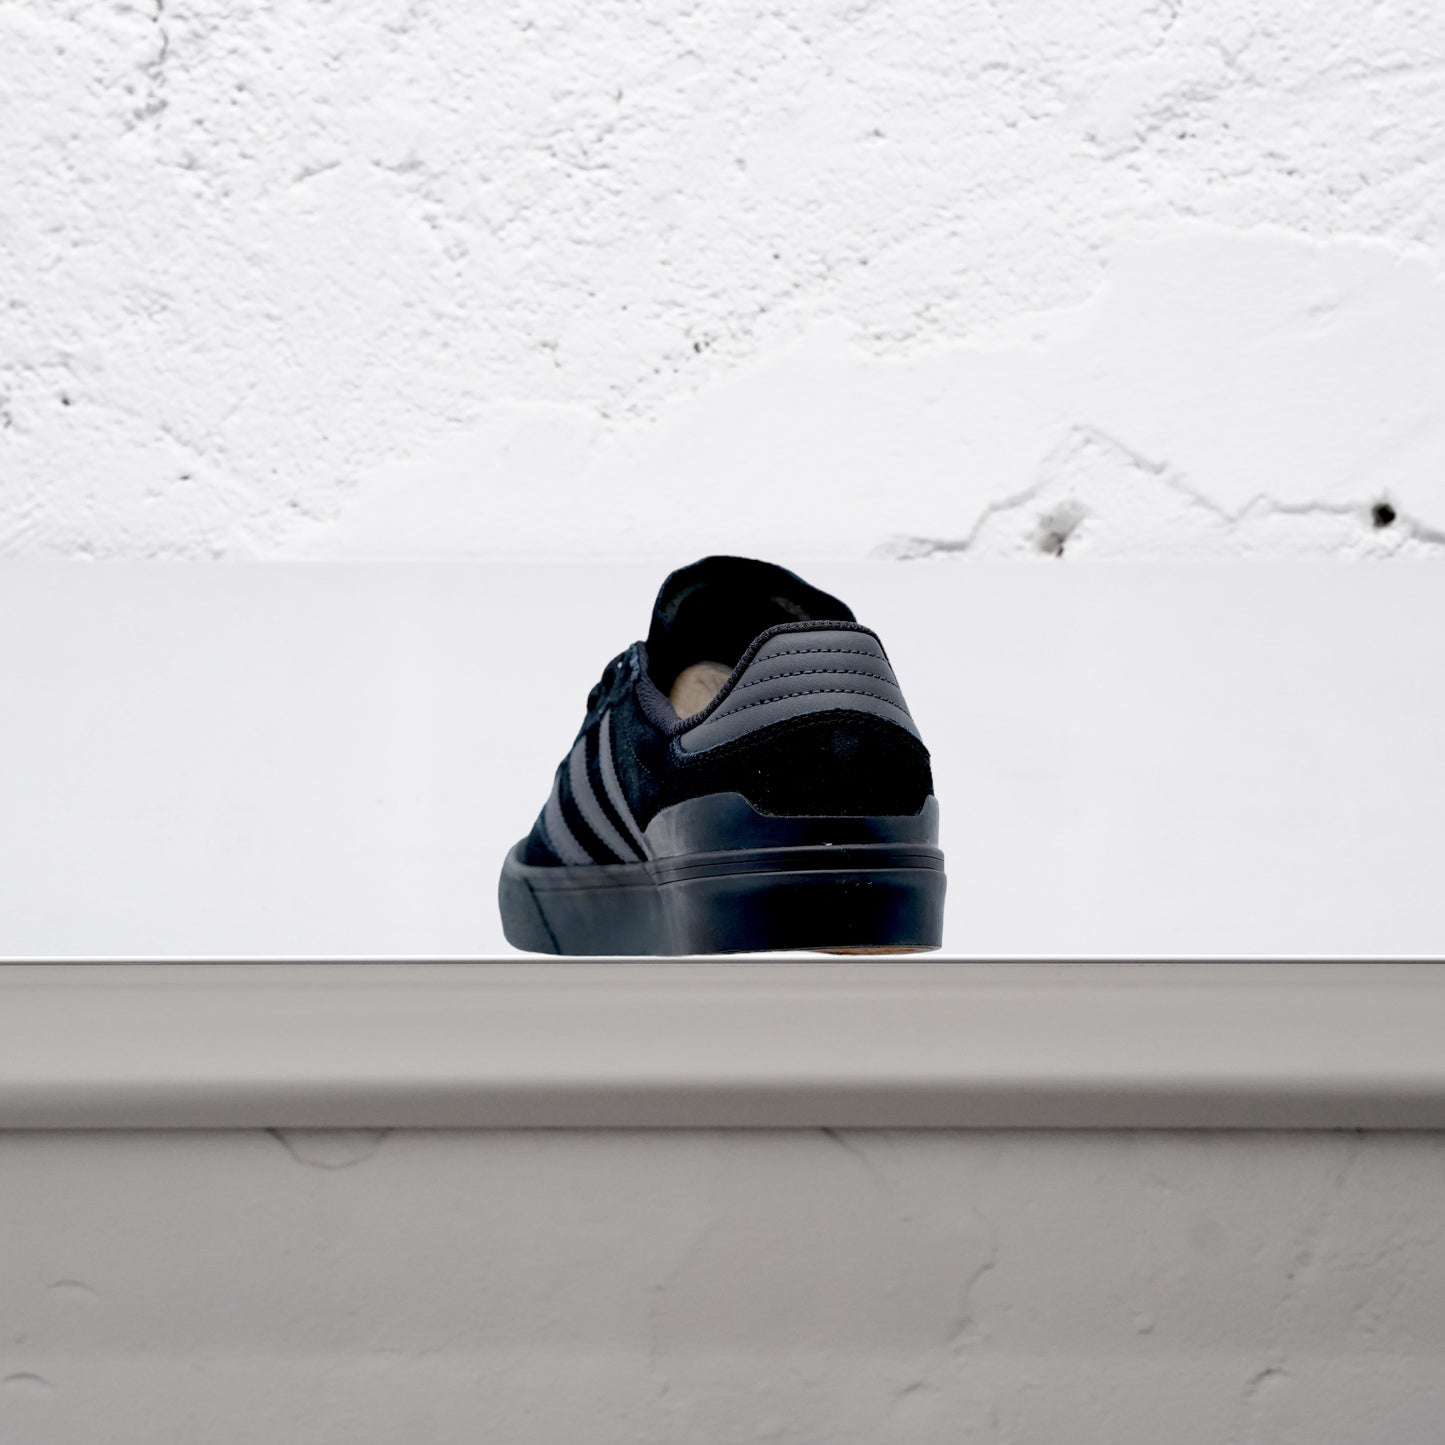 ADIDAS - Busenitz Vulc II Shoes - Black/Carbon/Black